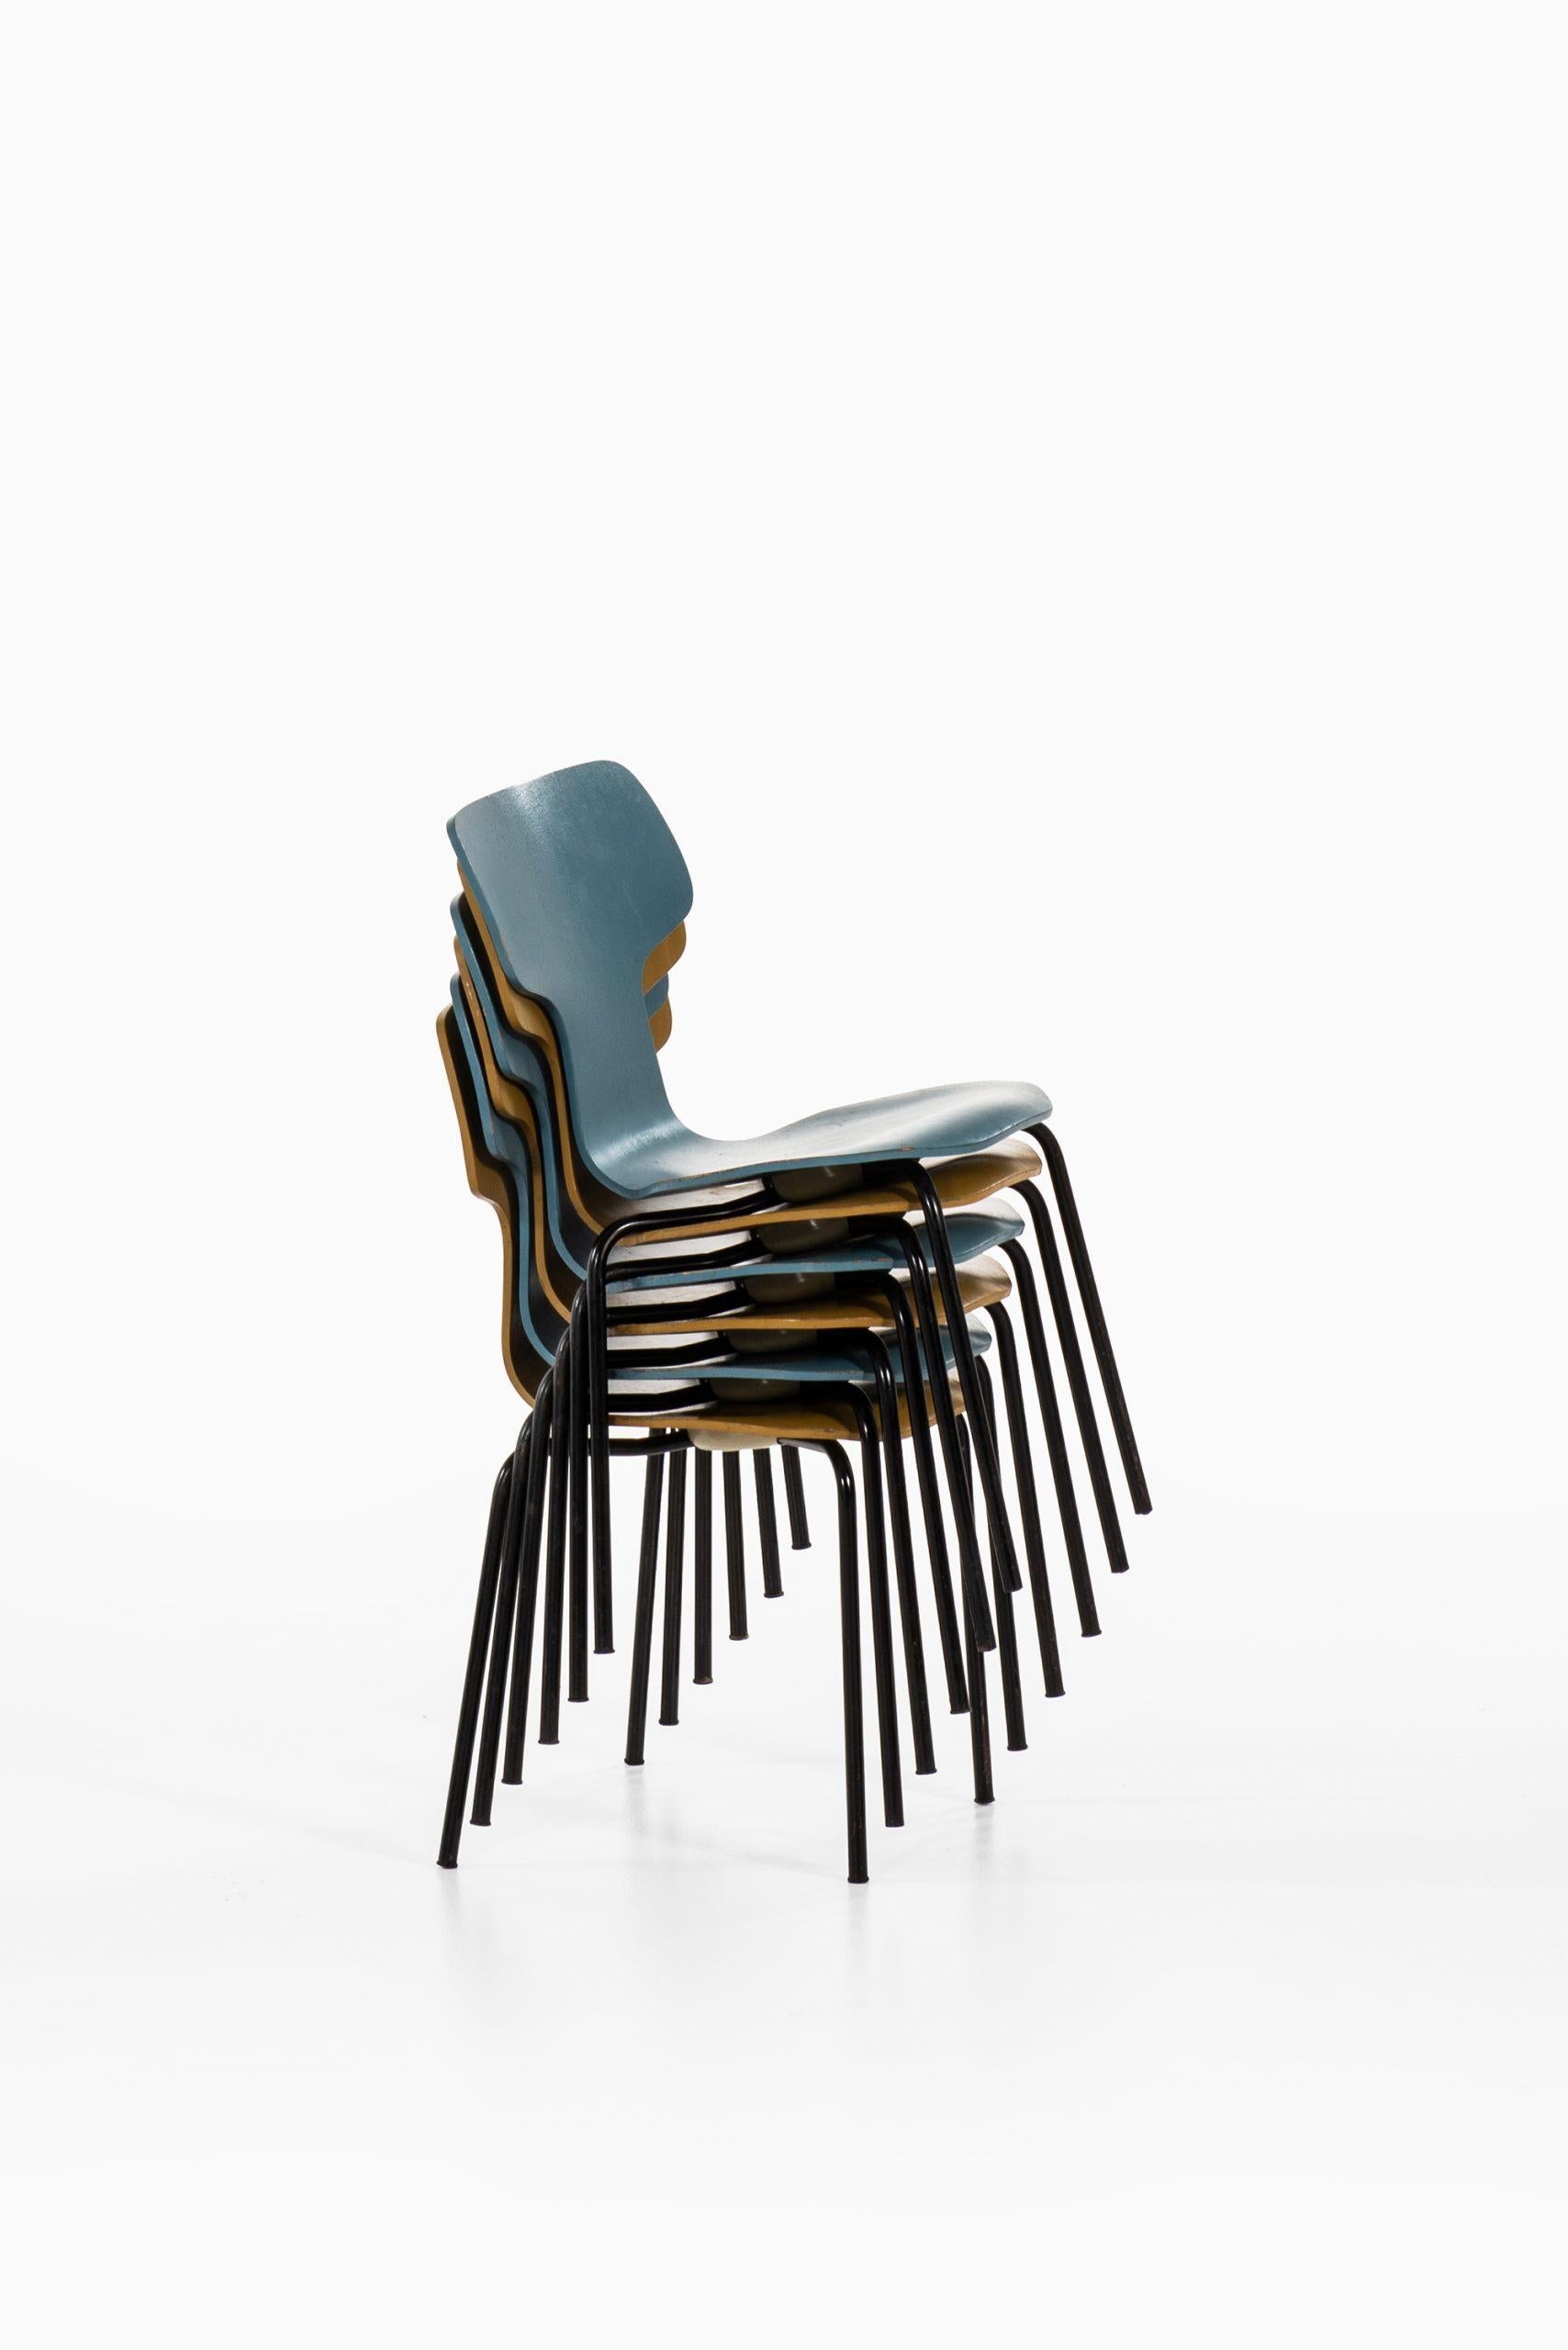 Satz von 6 Kinder-T-Stühlen, entworfen von Arne Jacobsen. Produziert von Fritz Hansen in Dänemark.